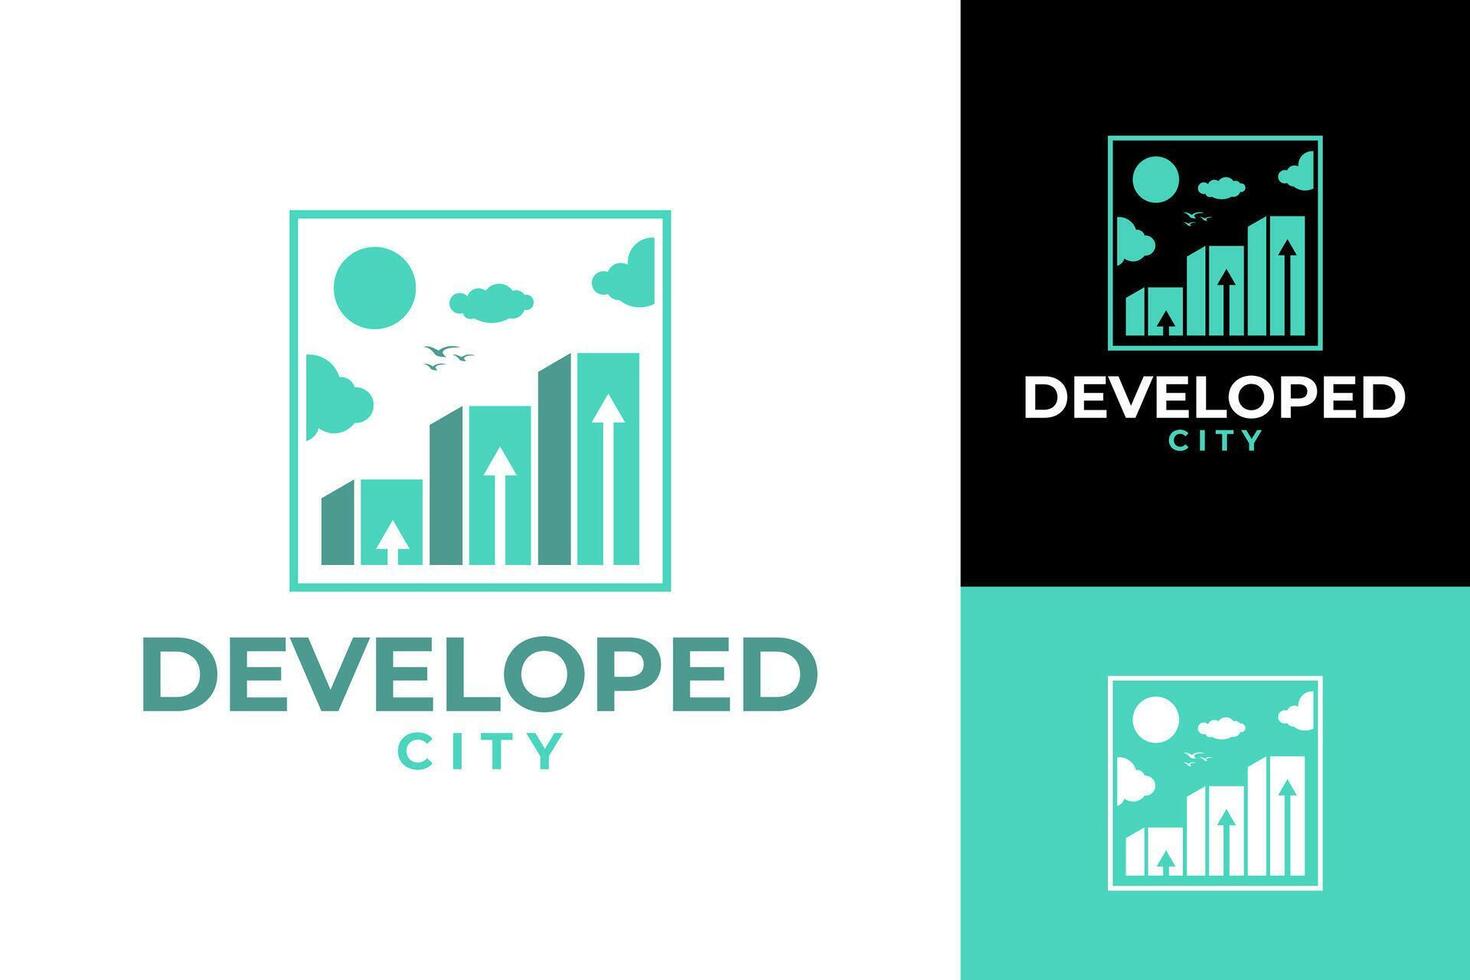 Entwicklung Stadt Wachstum Erfolg Logo Design vektor